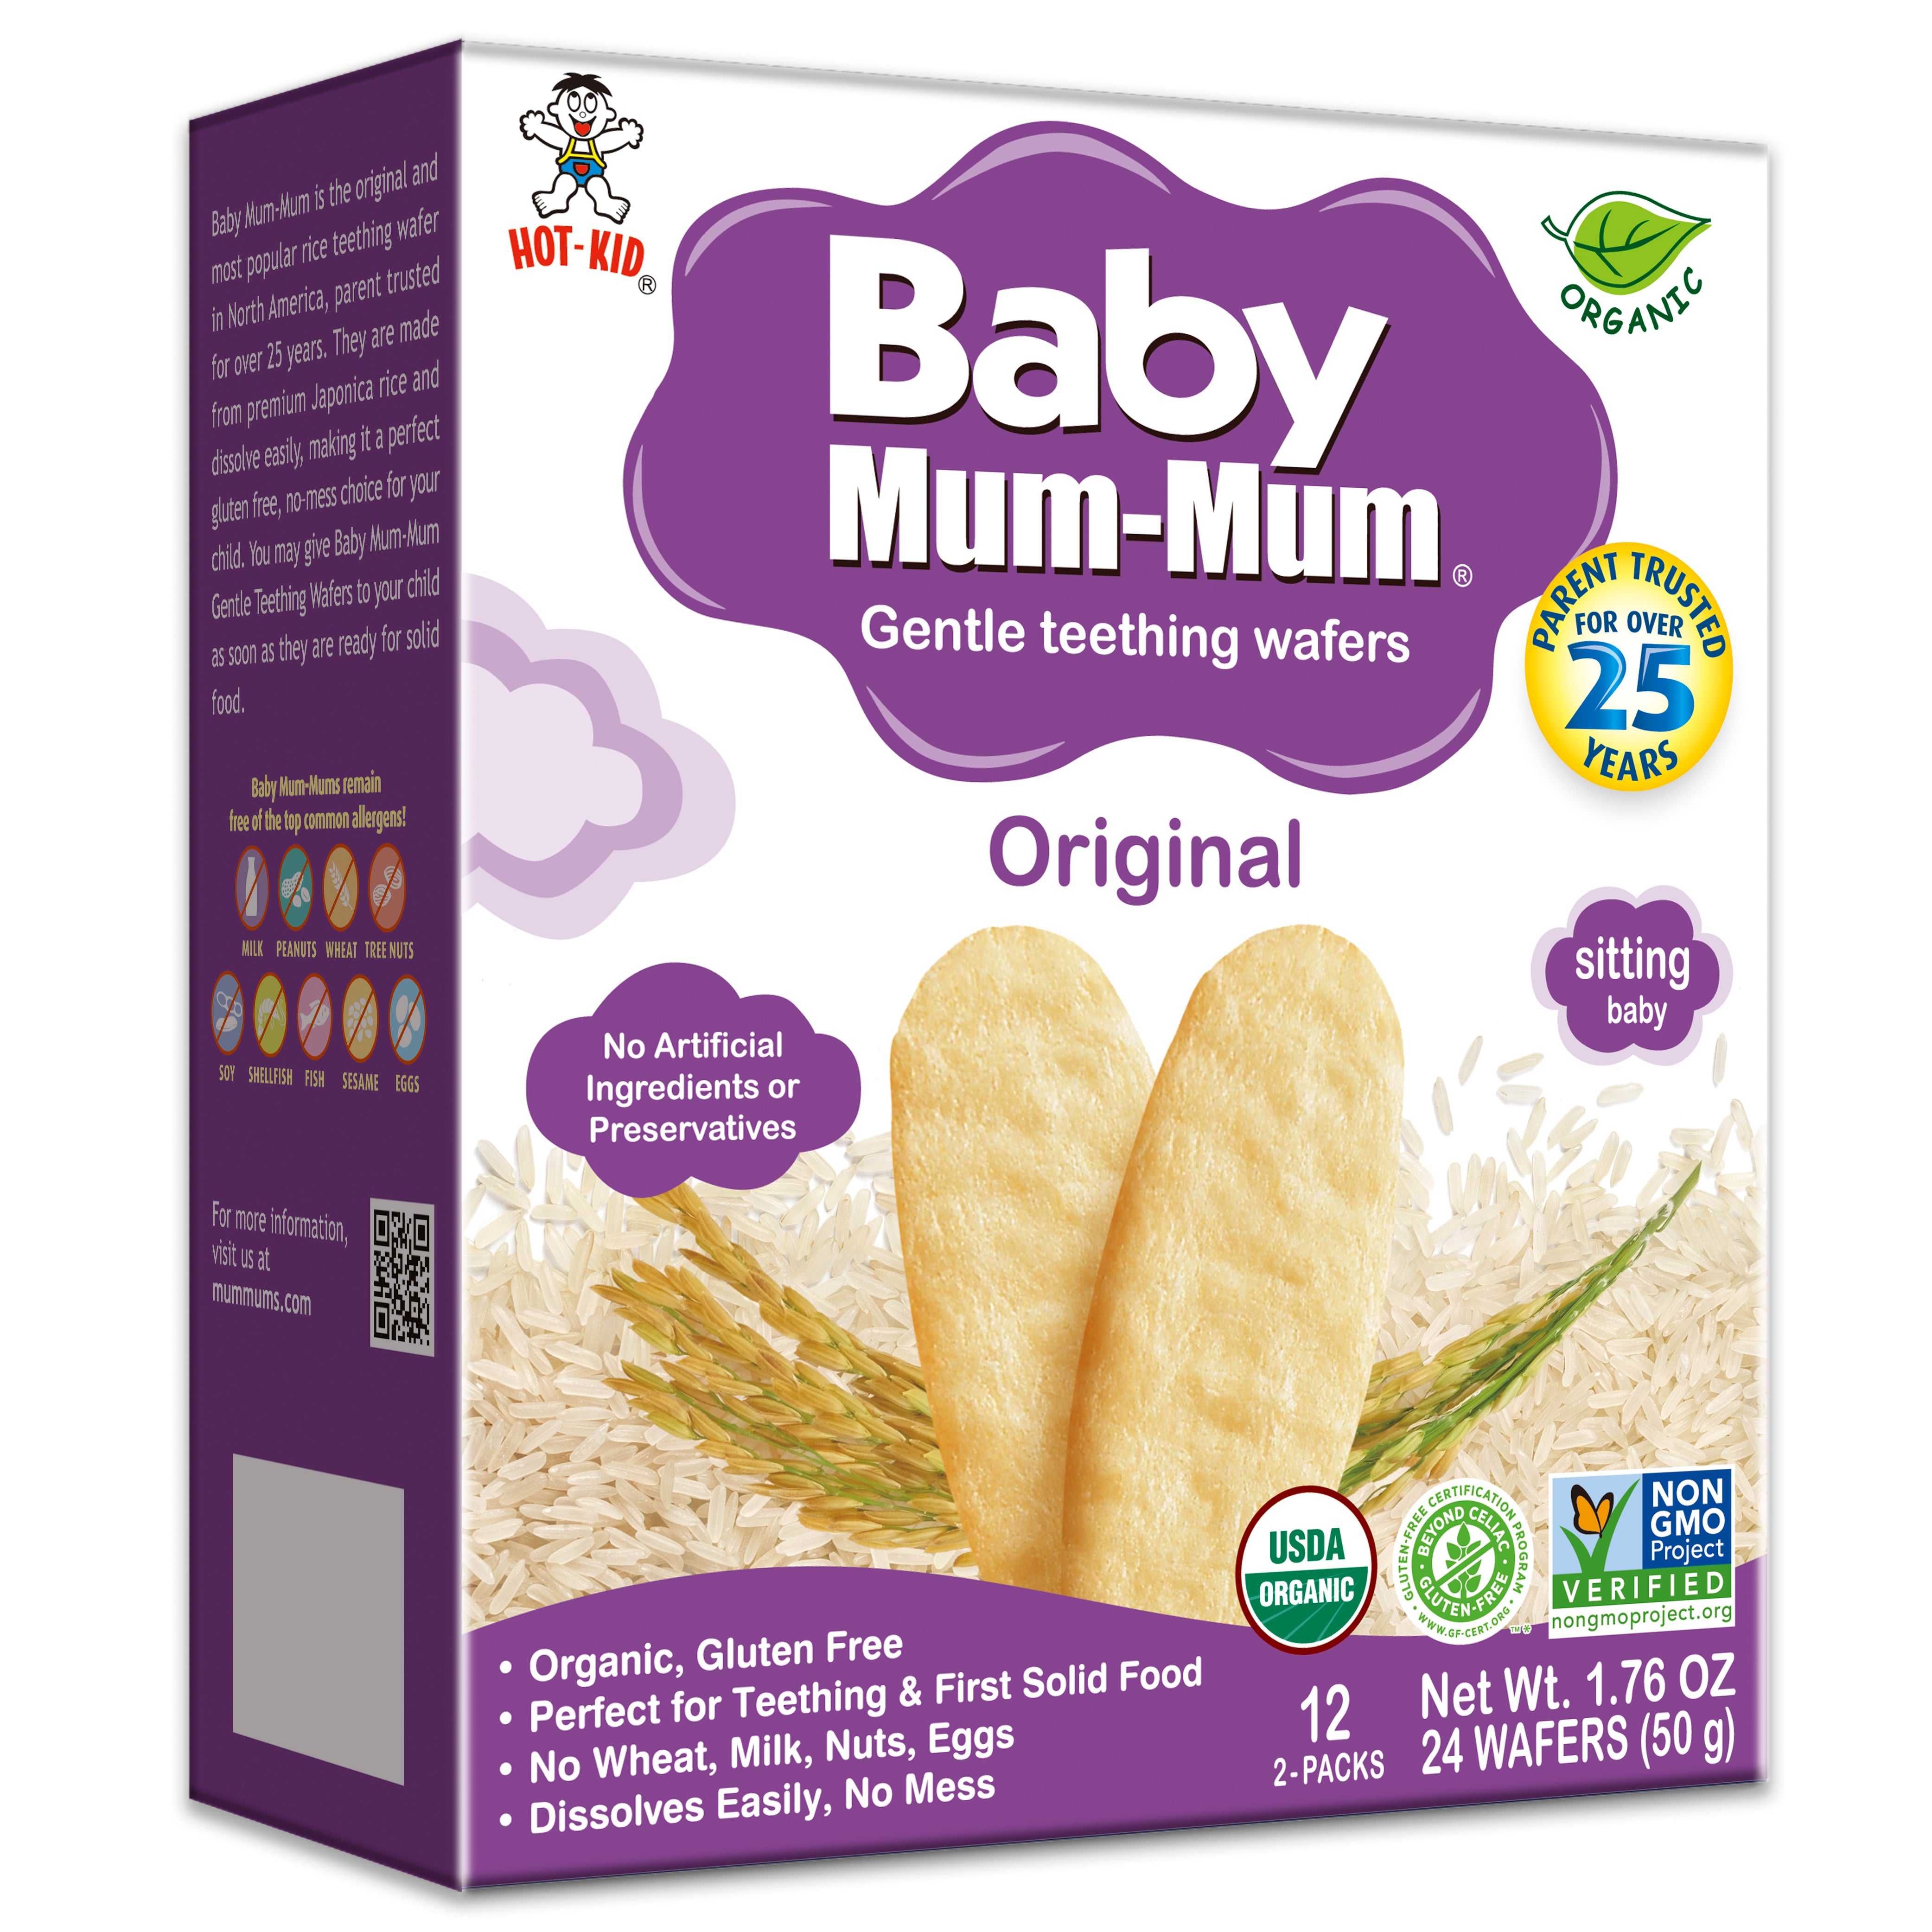 Baby Mum-Mum Organic Original Rice Rusks, Gentle Teething Wafers Baby Snack - 1.76 Oz Box (6 Pack) - image 1 of 2